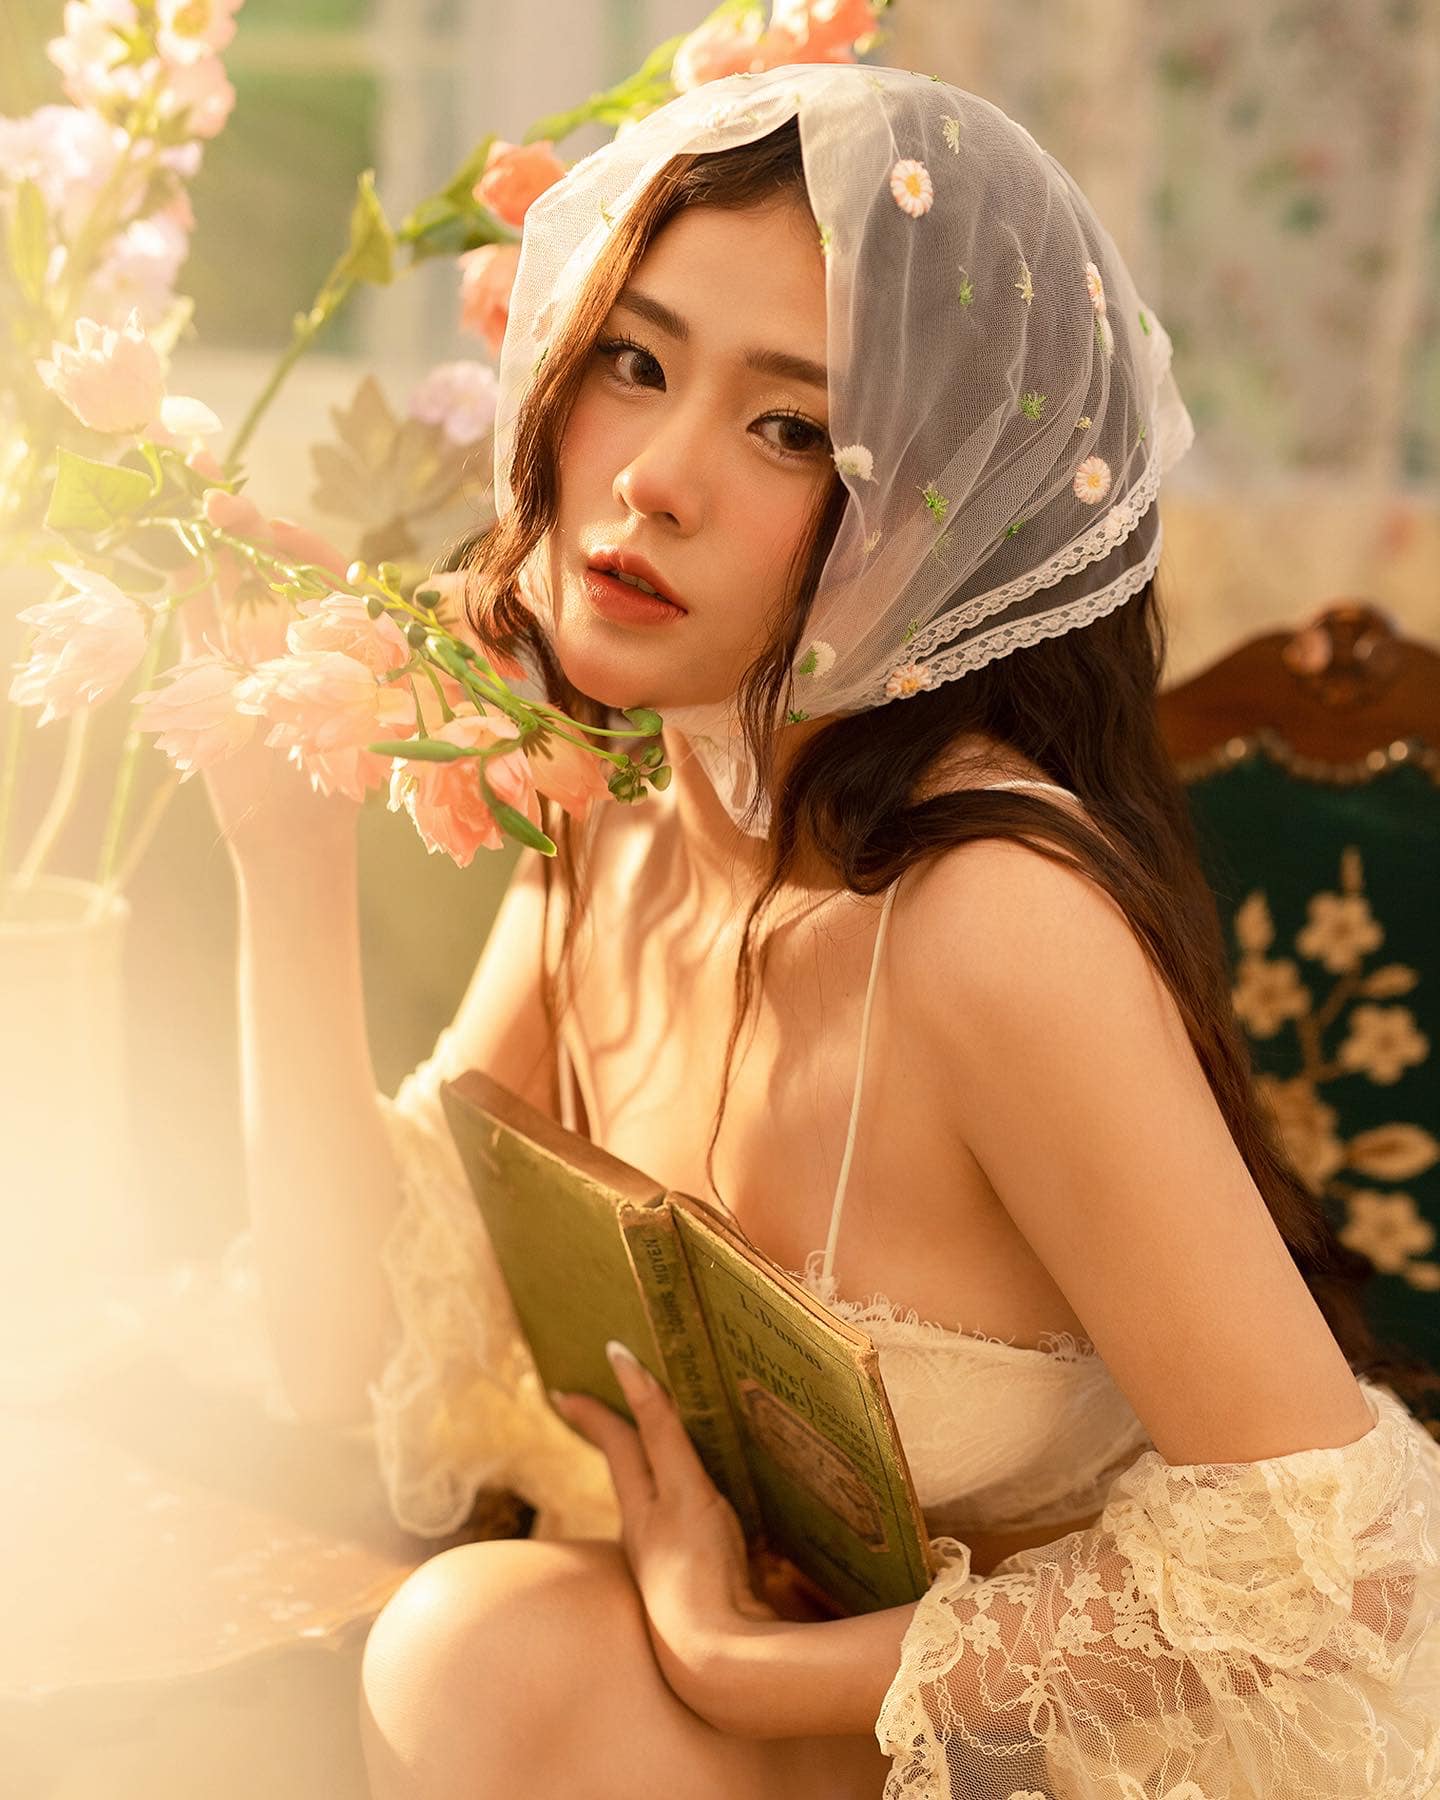 Nguyễn Dương Hồng Hân sở hữu gương mặt búp bê cùng vóc dáng quyến rũ nên có gu mặc đa dạng. Tuy nhiên, cô được nhiều người nhận xét là phù hợp nhất với phong cách nàng thơ điệu đà.